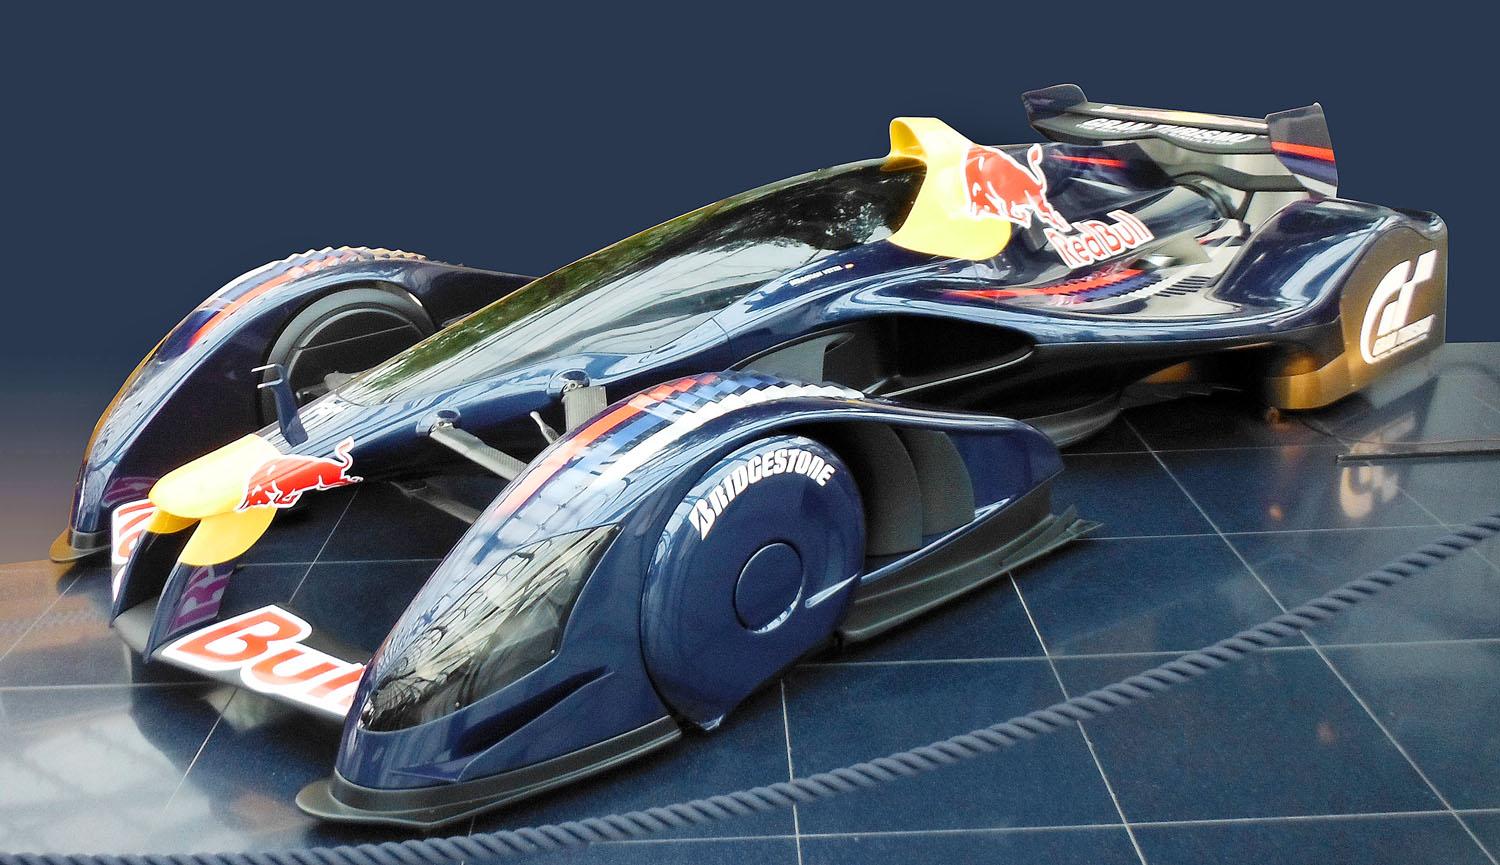 Lexan kabintető és kerékburkolat a kísérleti Red Bull versenyautón